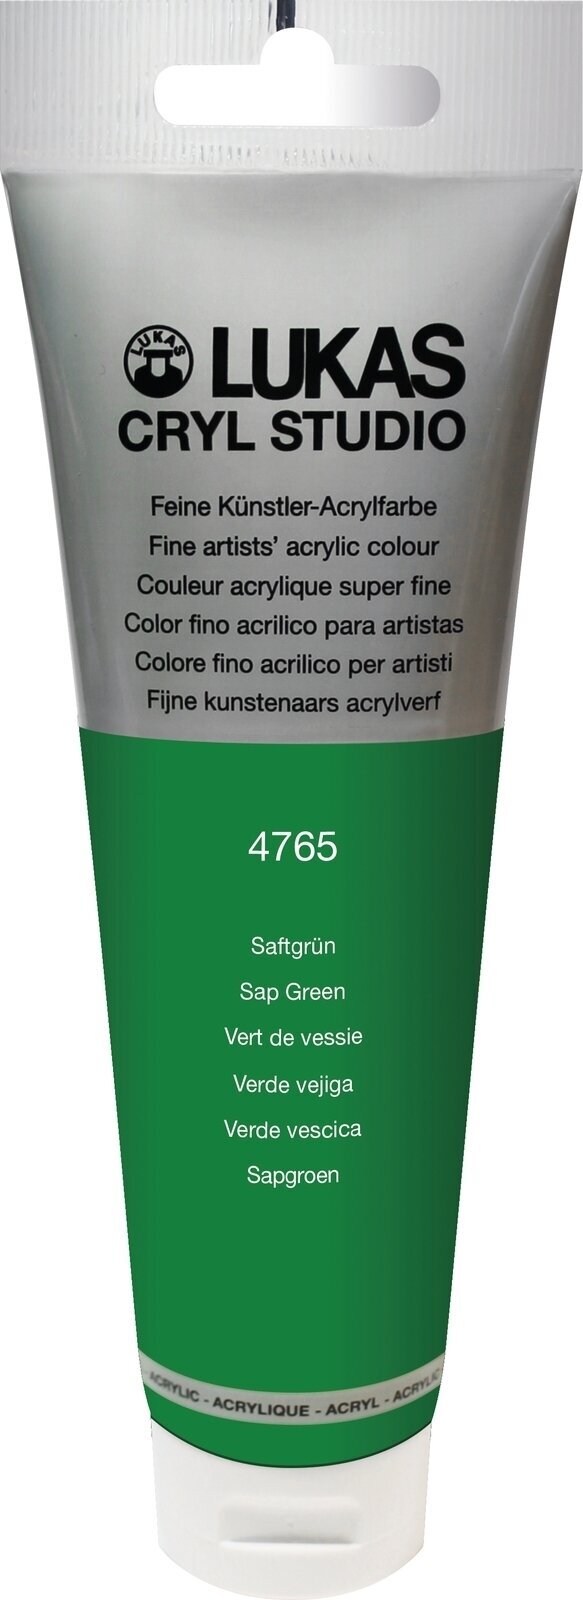 Akrylová farba Lukas Cryl Studio Acrylic Paint Plastic Tube Akrylová farba Sap Green 125 ml 1 ks